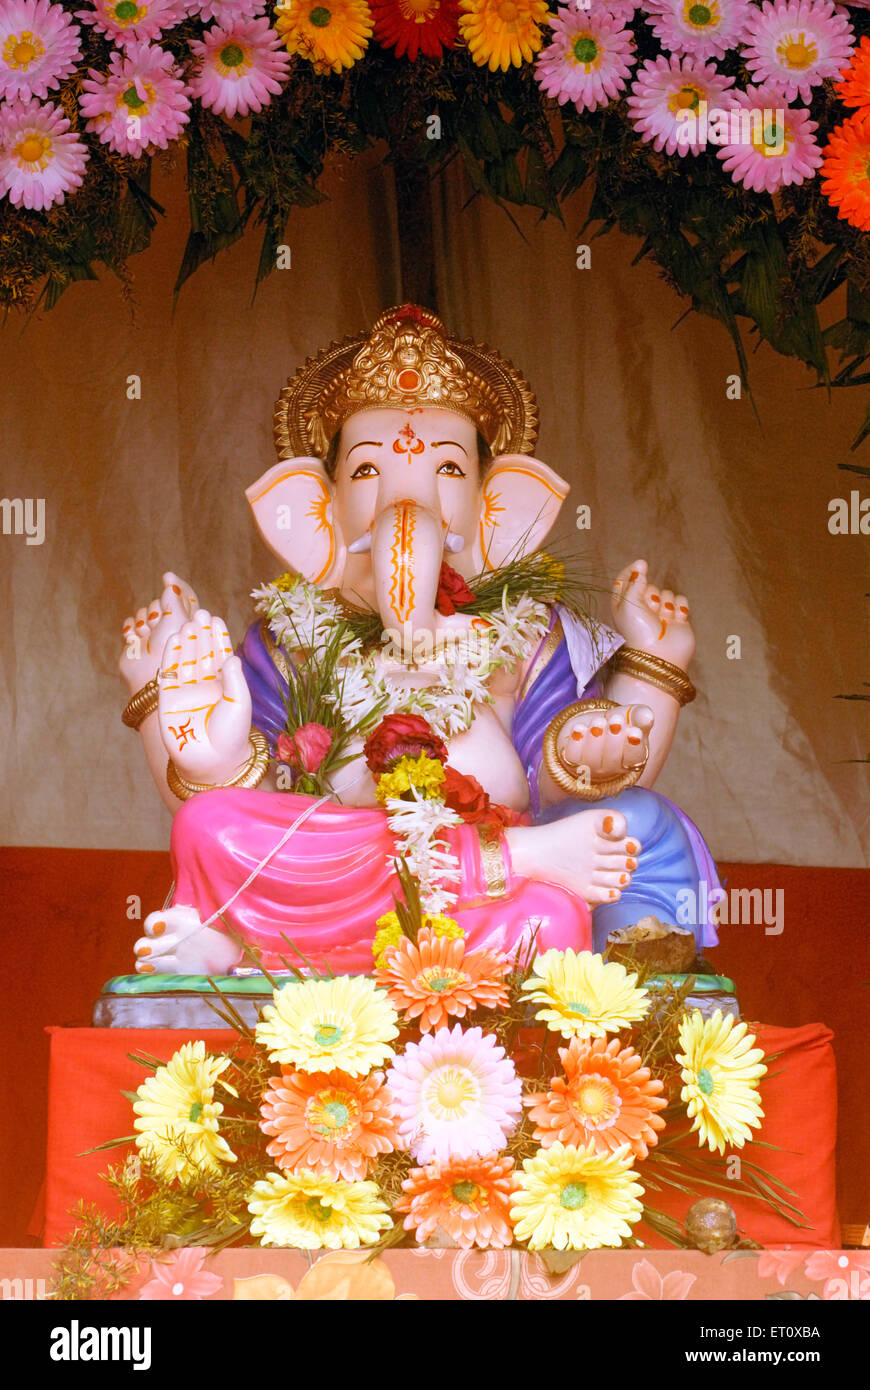 Richly decorated idol of Lord Ganesh elephant headed god ; Ganapati festival year 2008 at Pune ; Maharashtra ; India Stock Photo